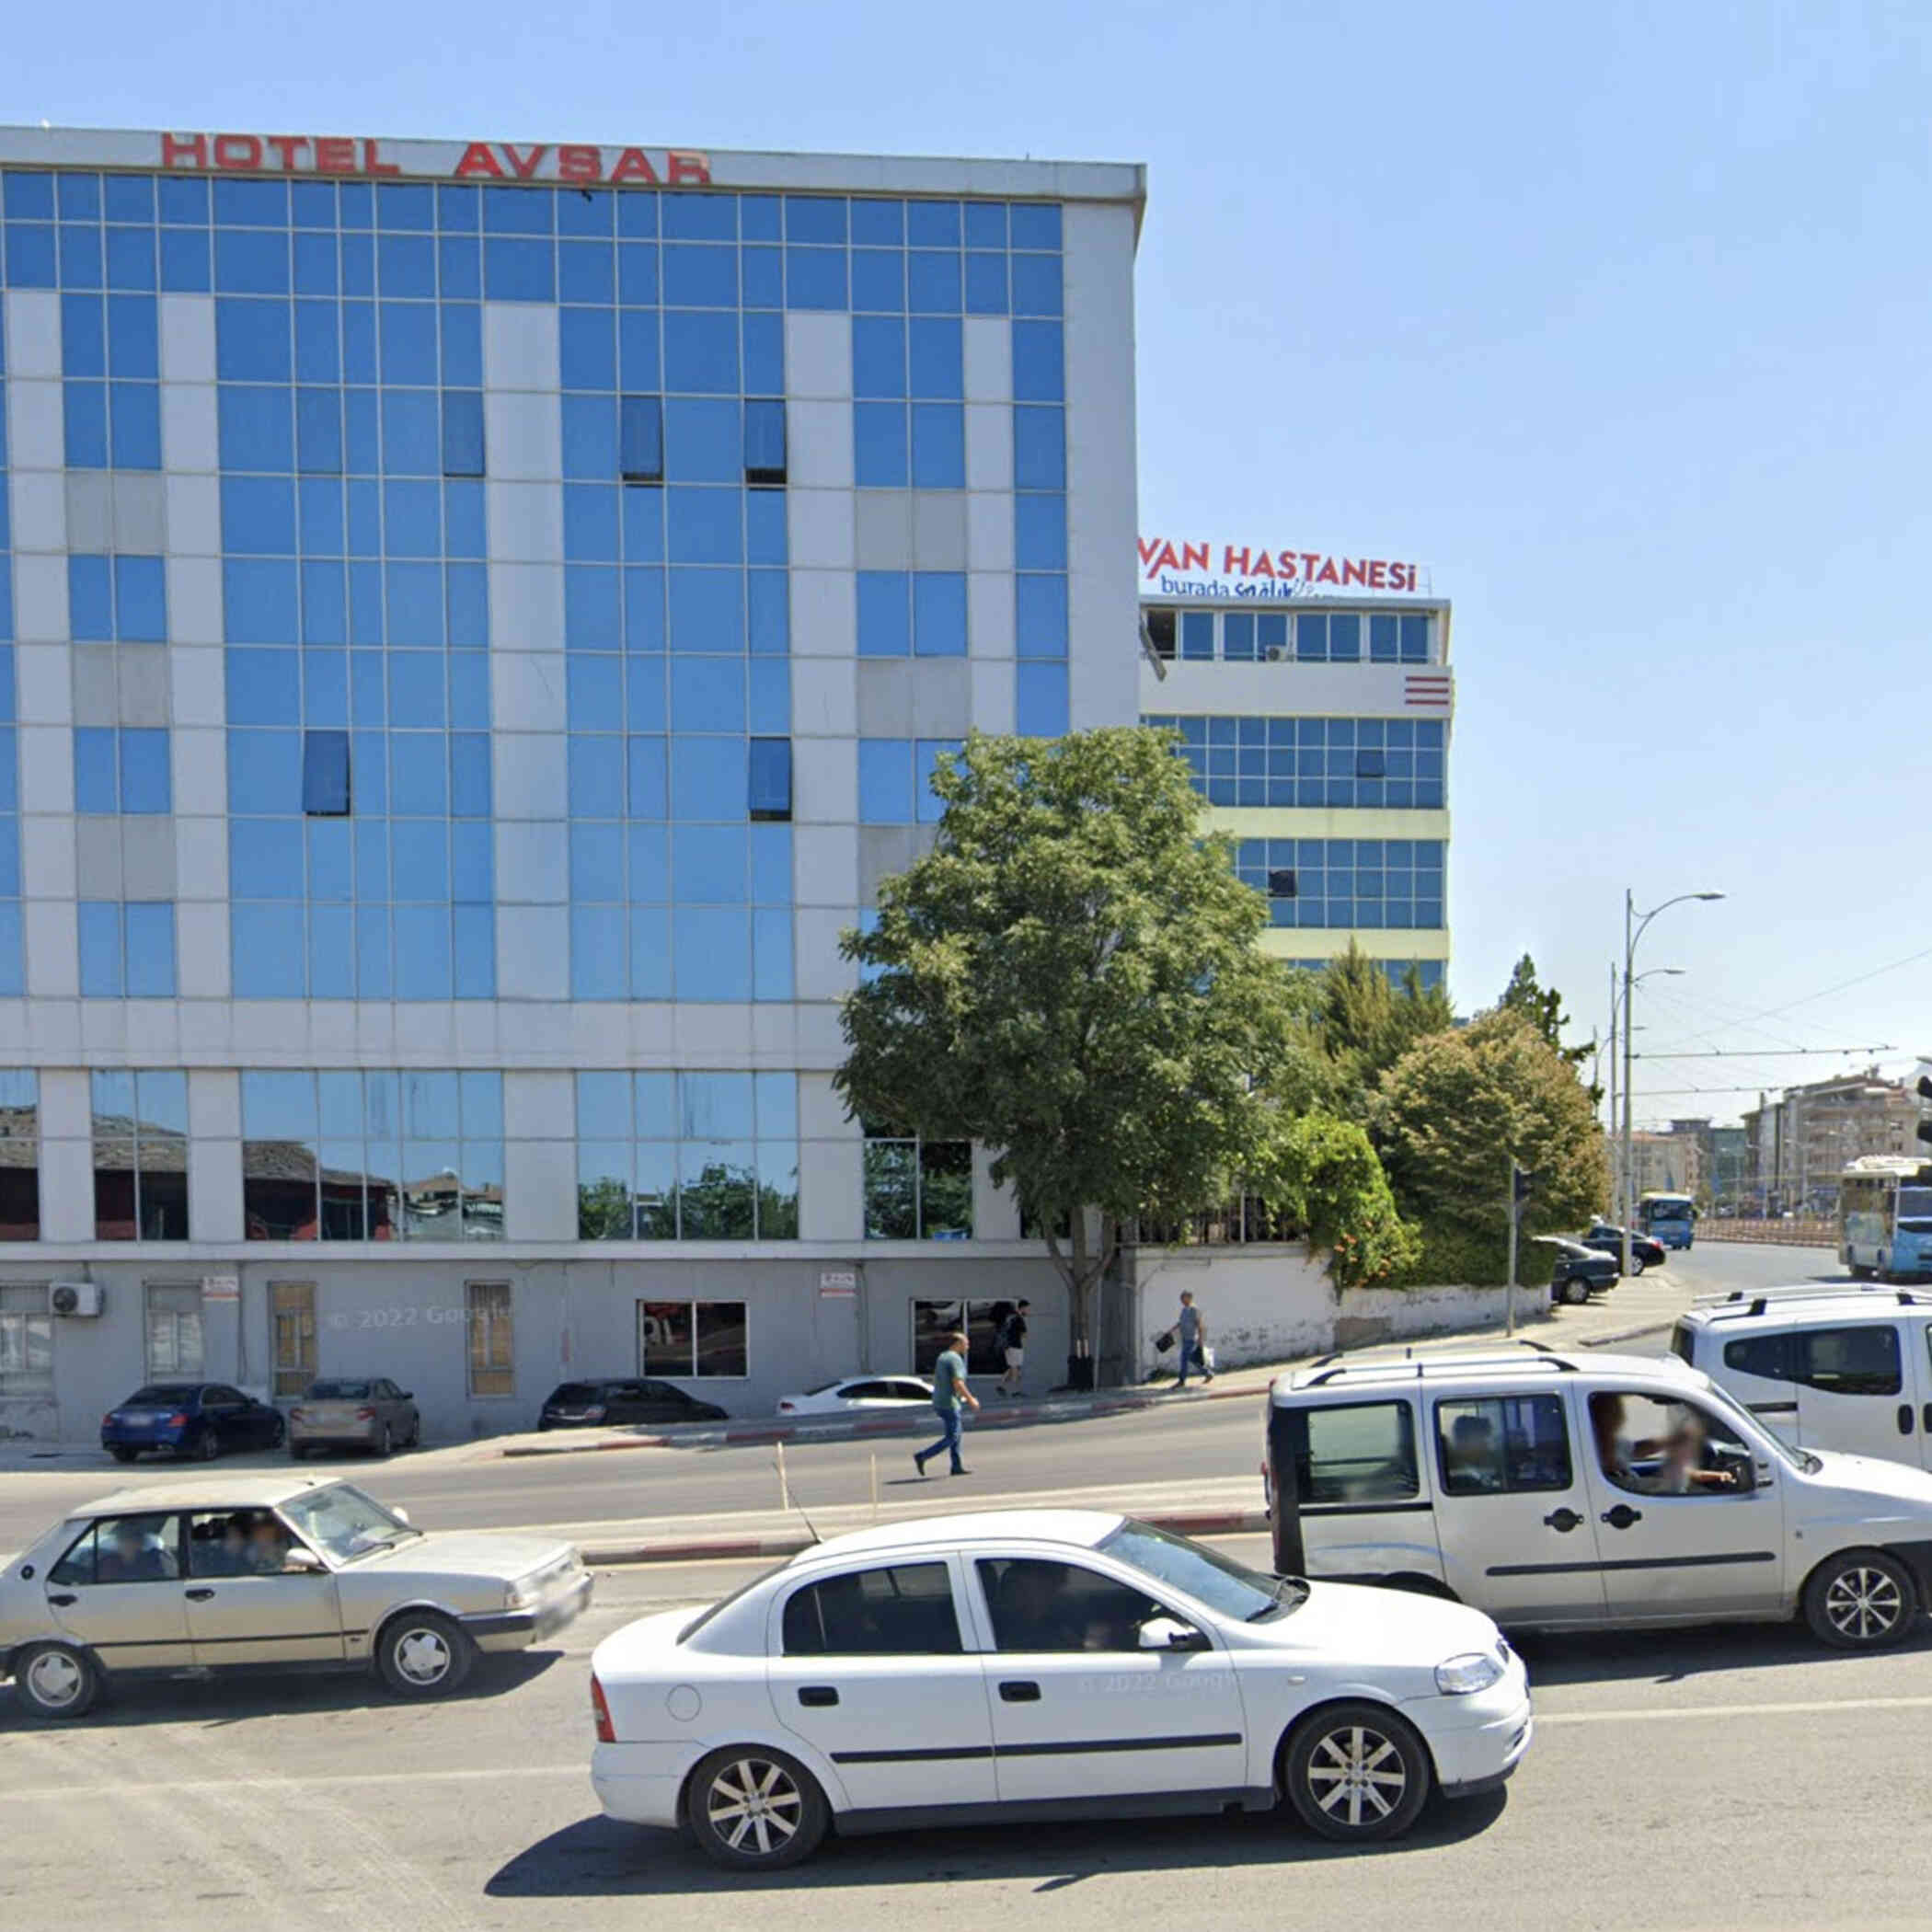 Hotel Avsar, Malatya in turkey